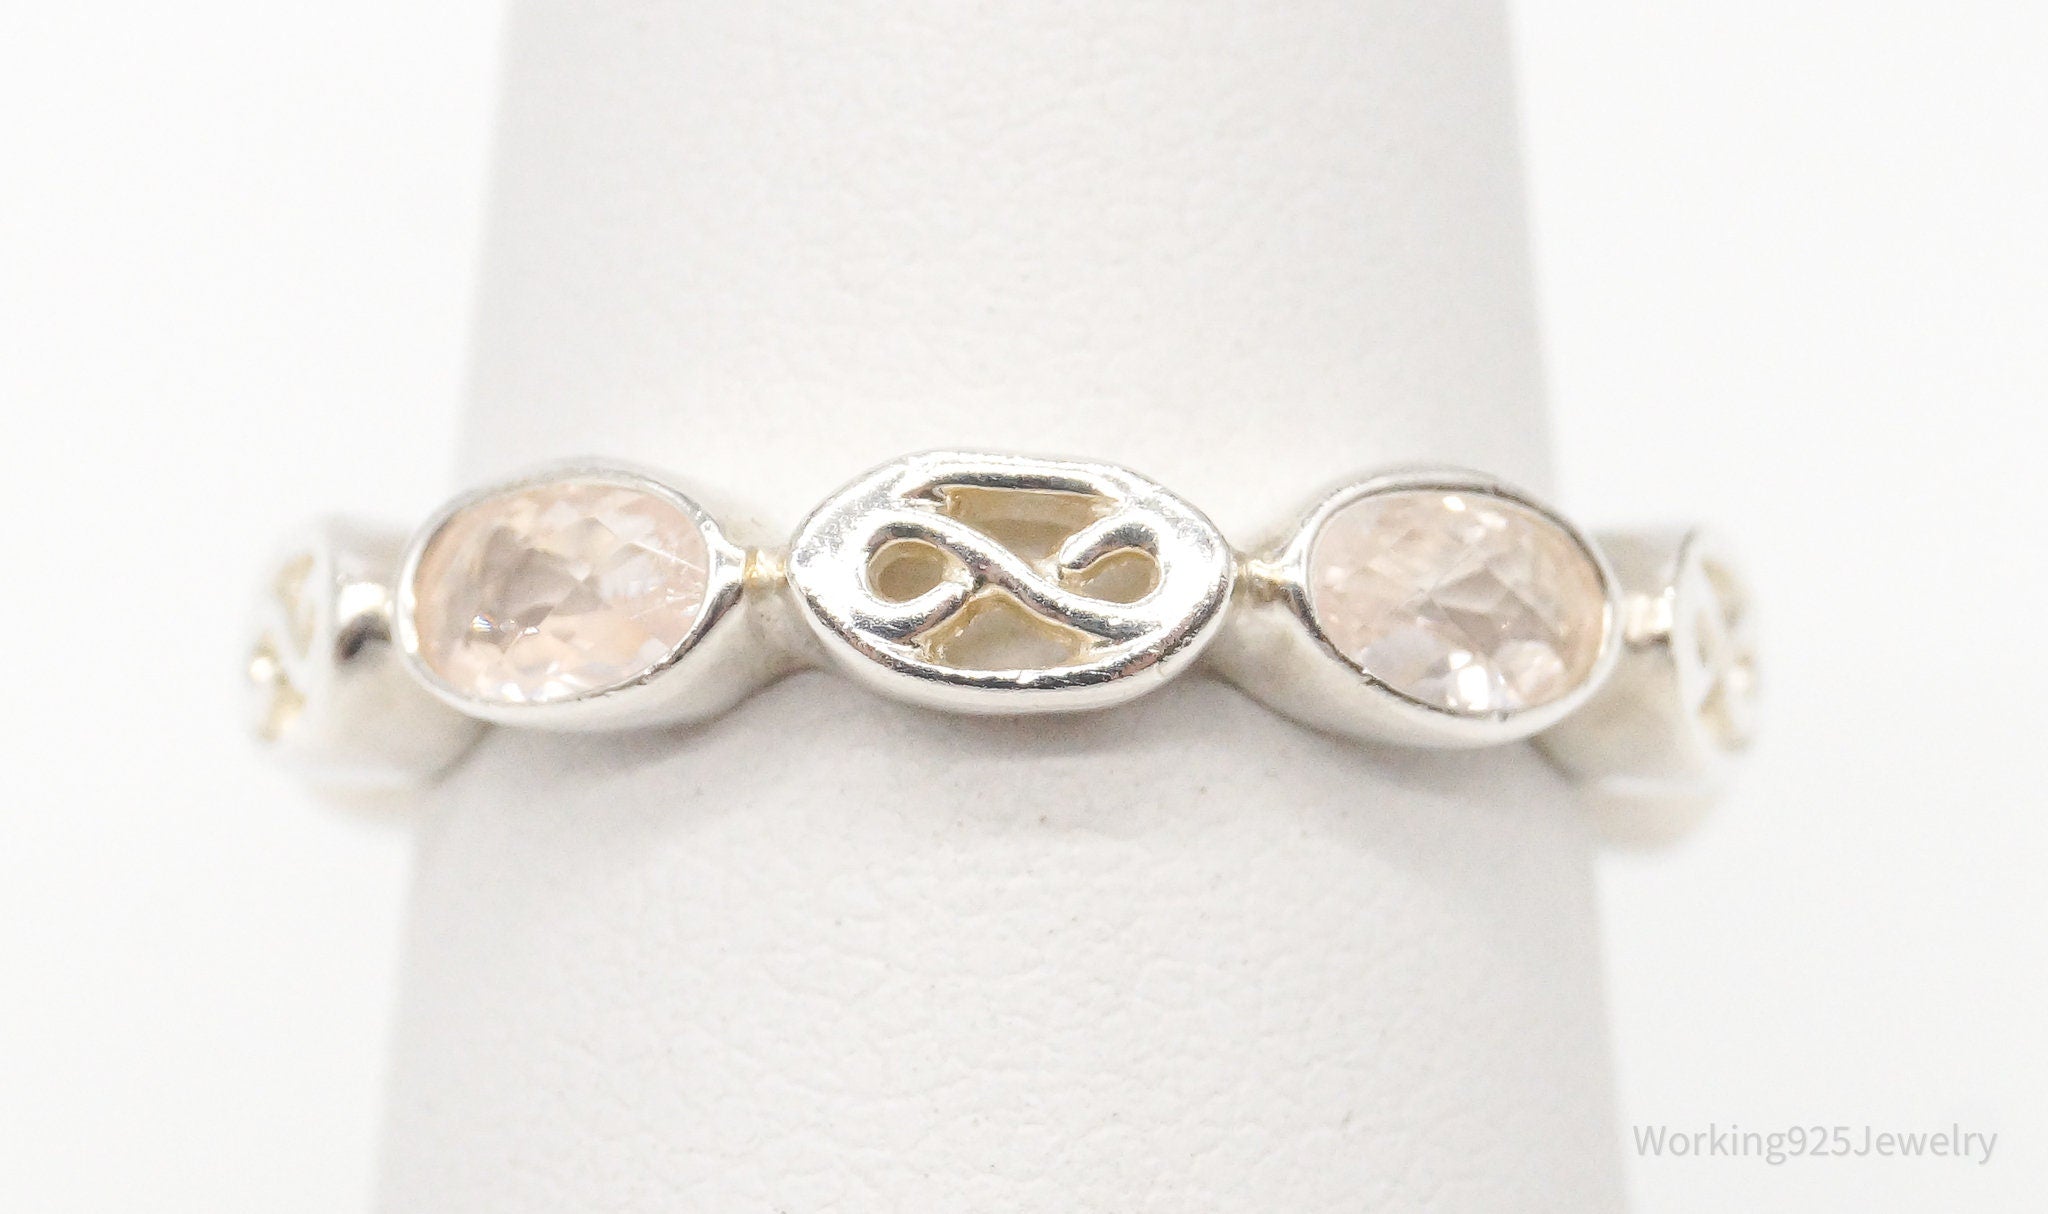 Vintage Rose Quartz Sterling Silver Ring - Size 6.25